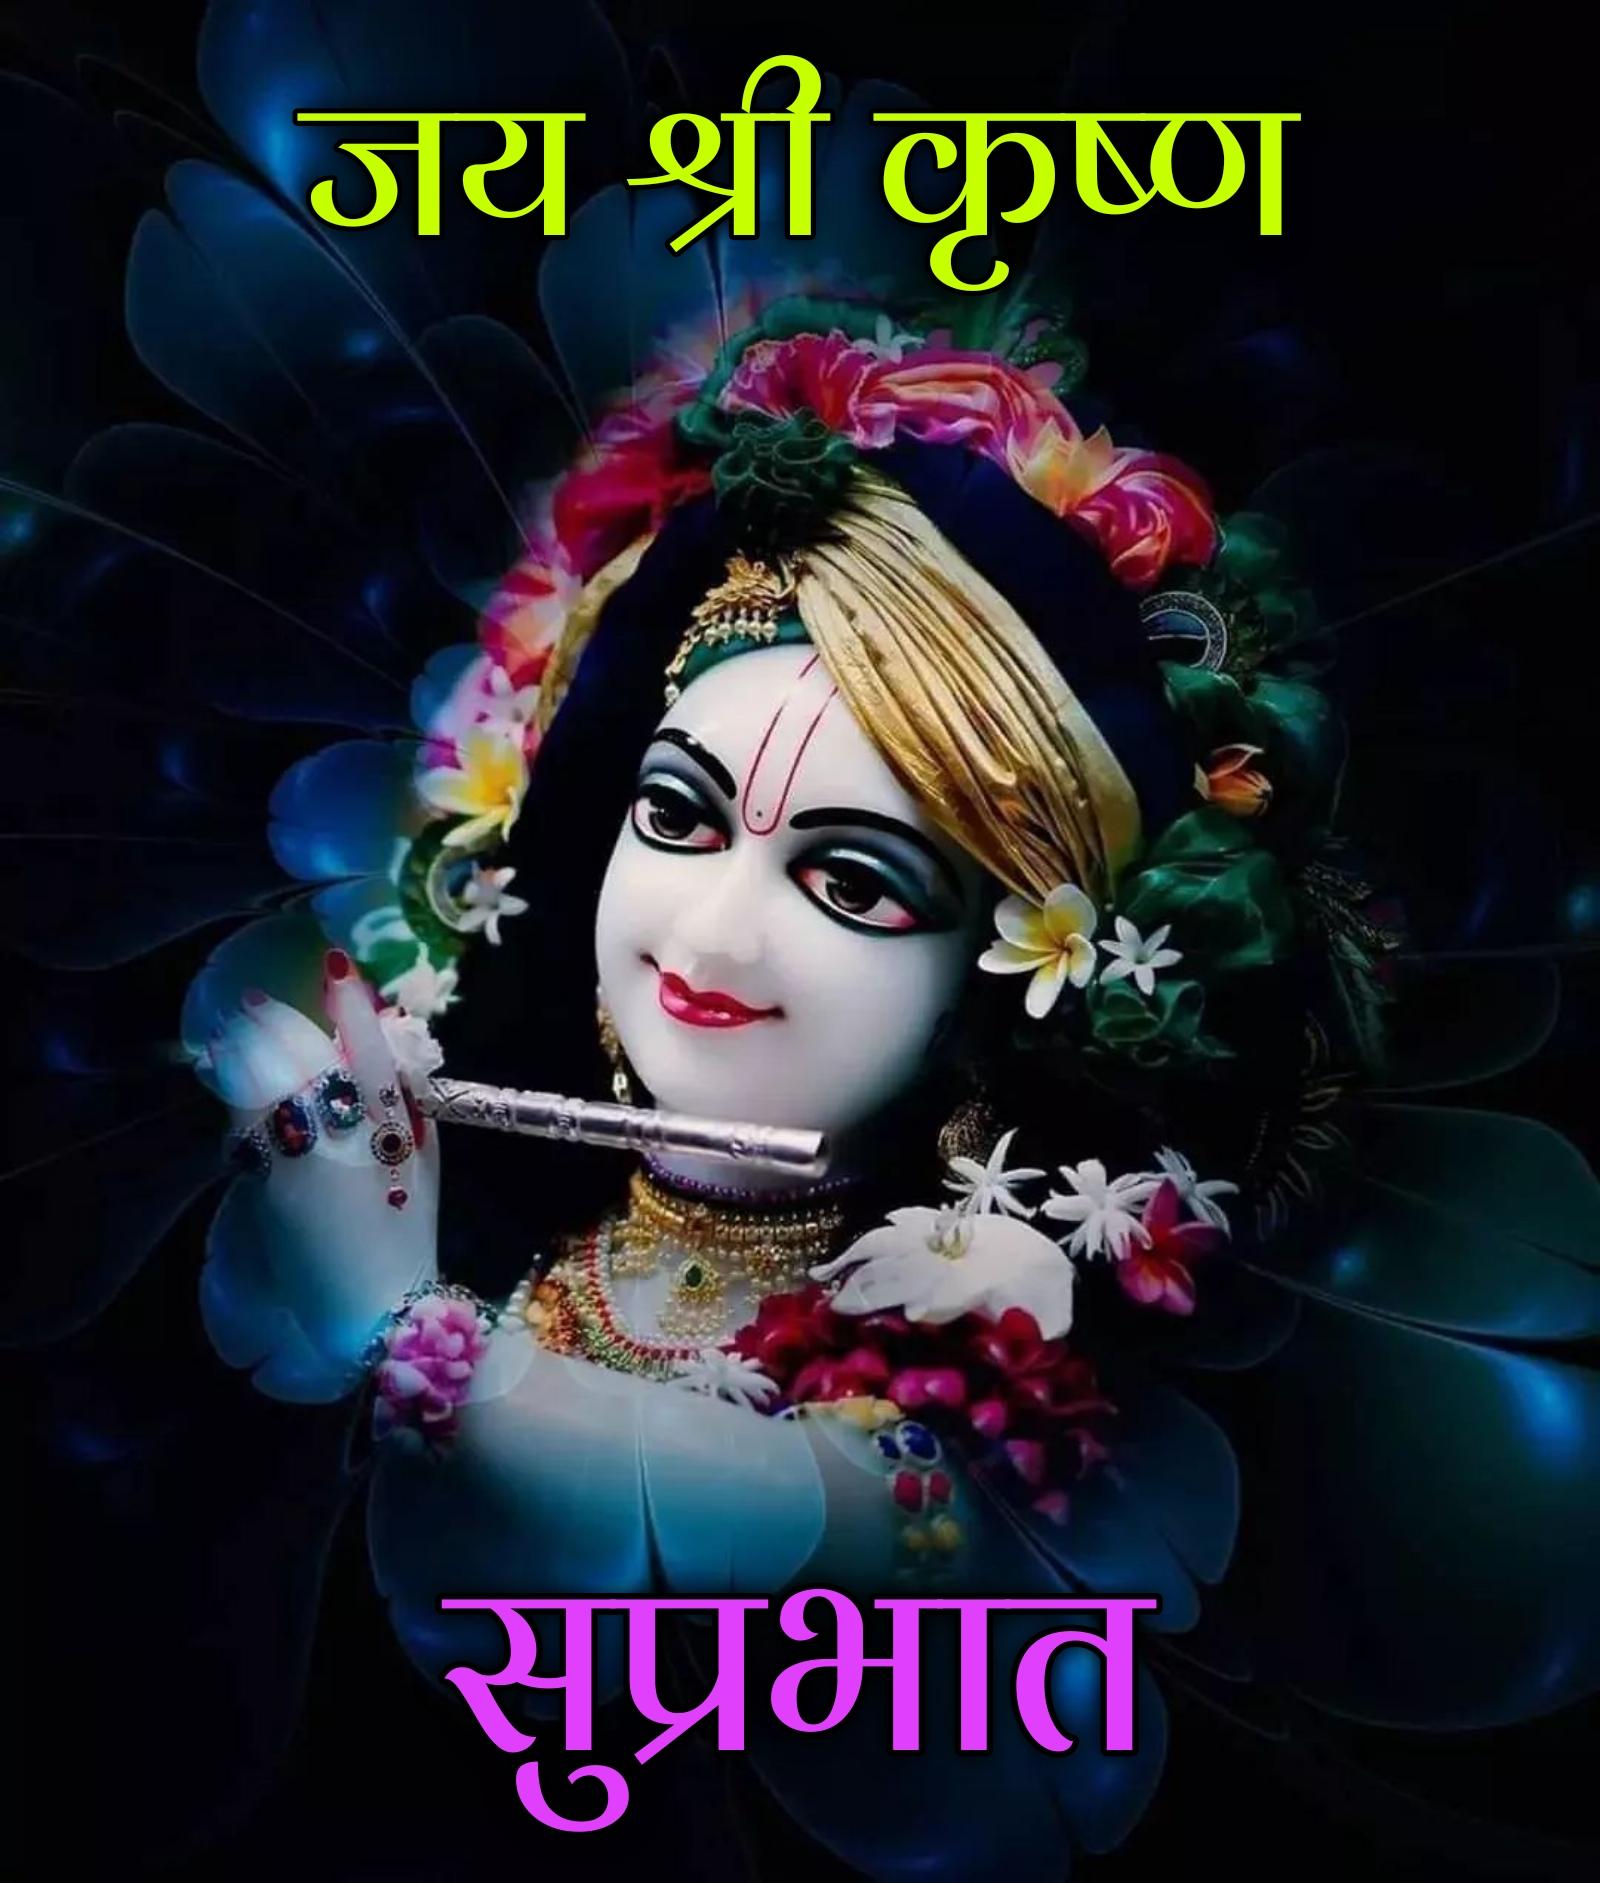 Jai Shri Krishna Good Morning Images